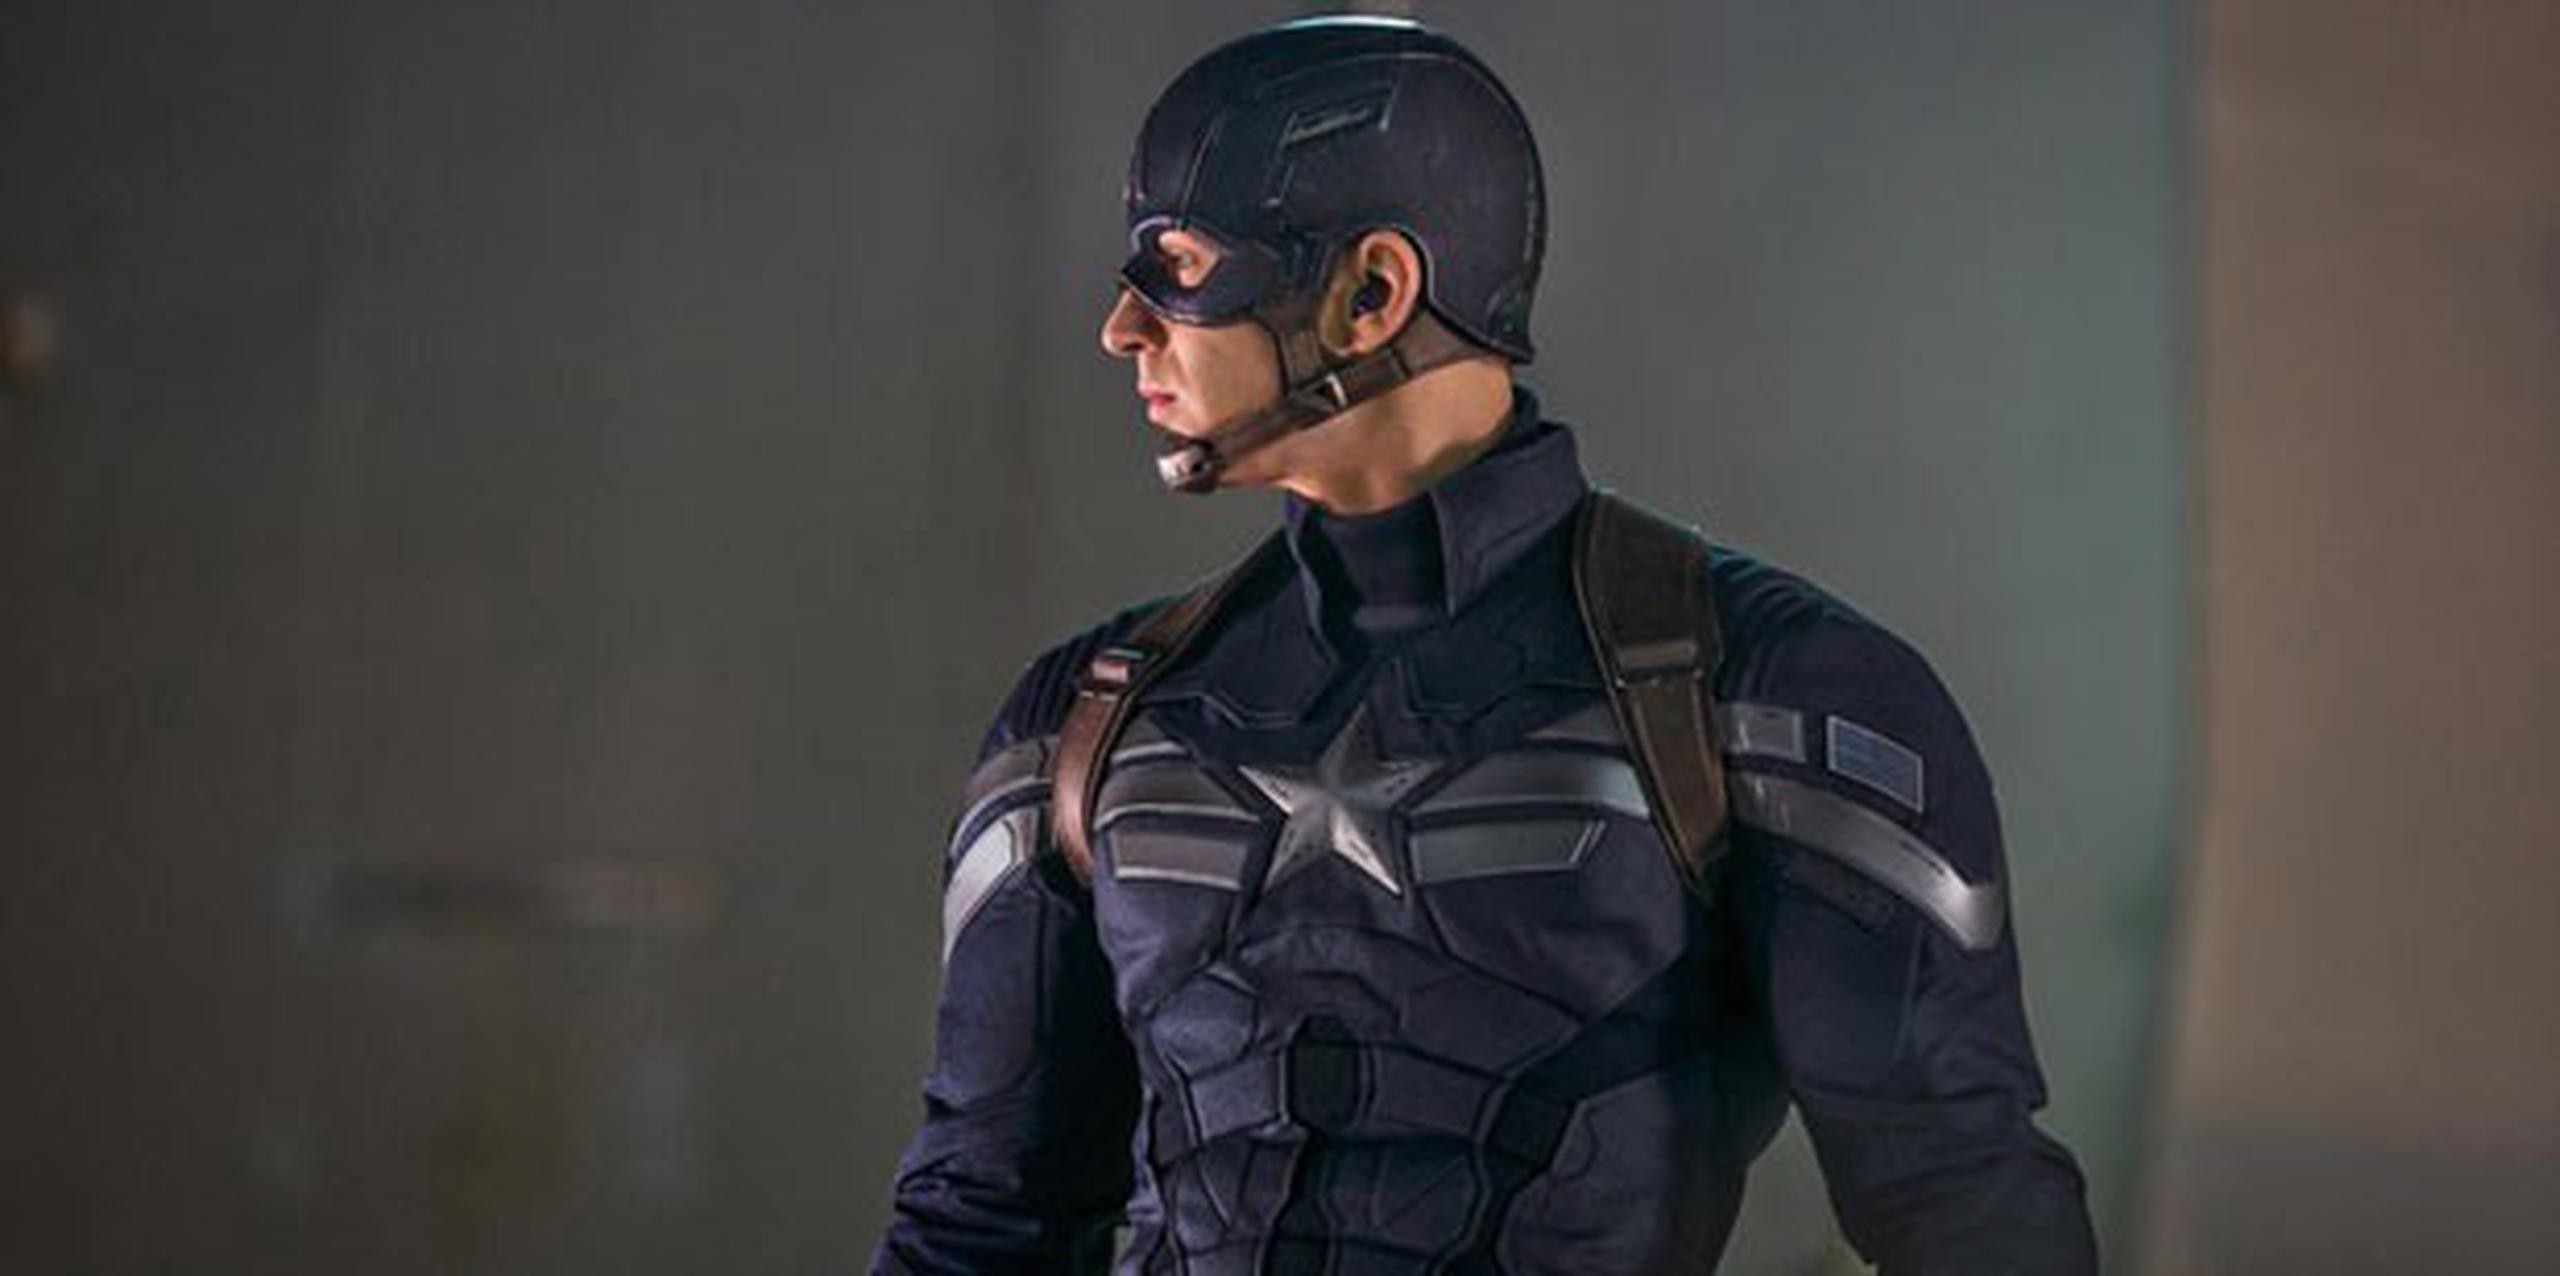 "Capitán América 3", cuyo protagonista es Chris Evans, tiene previsto su estreno el 6 de mayo de 2016. (Archivo)